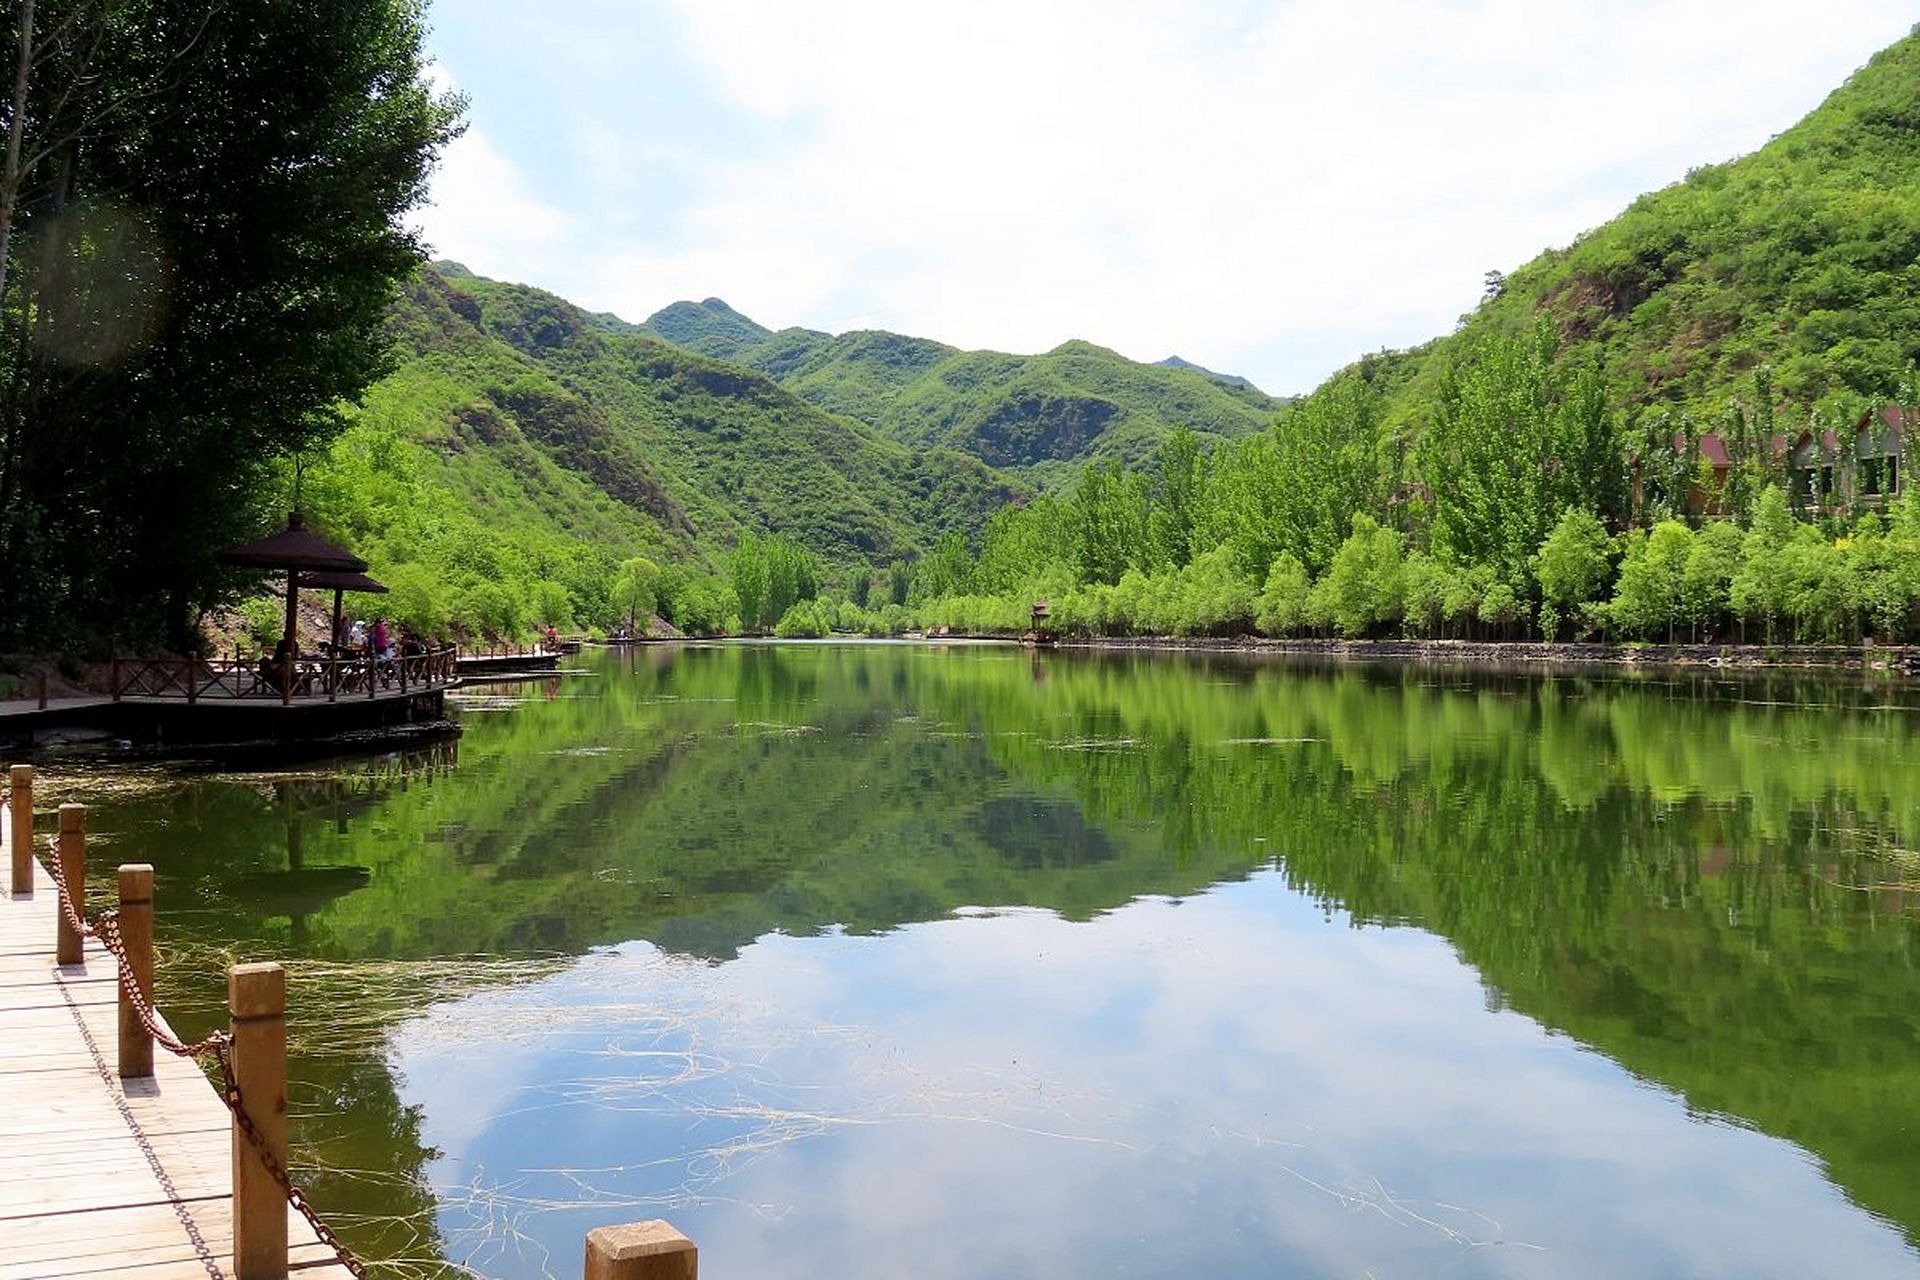 吉林市的湖光山色景区以其美丽的自然风光和悠久的历史文化闻名,被誉